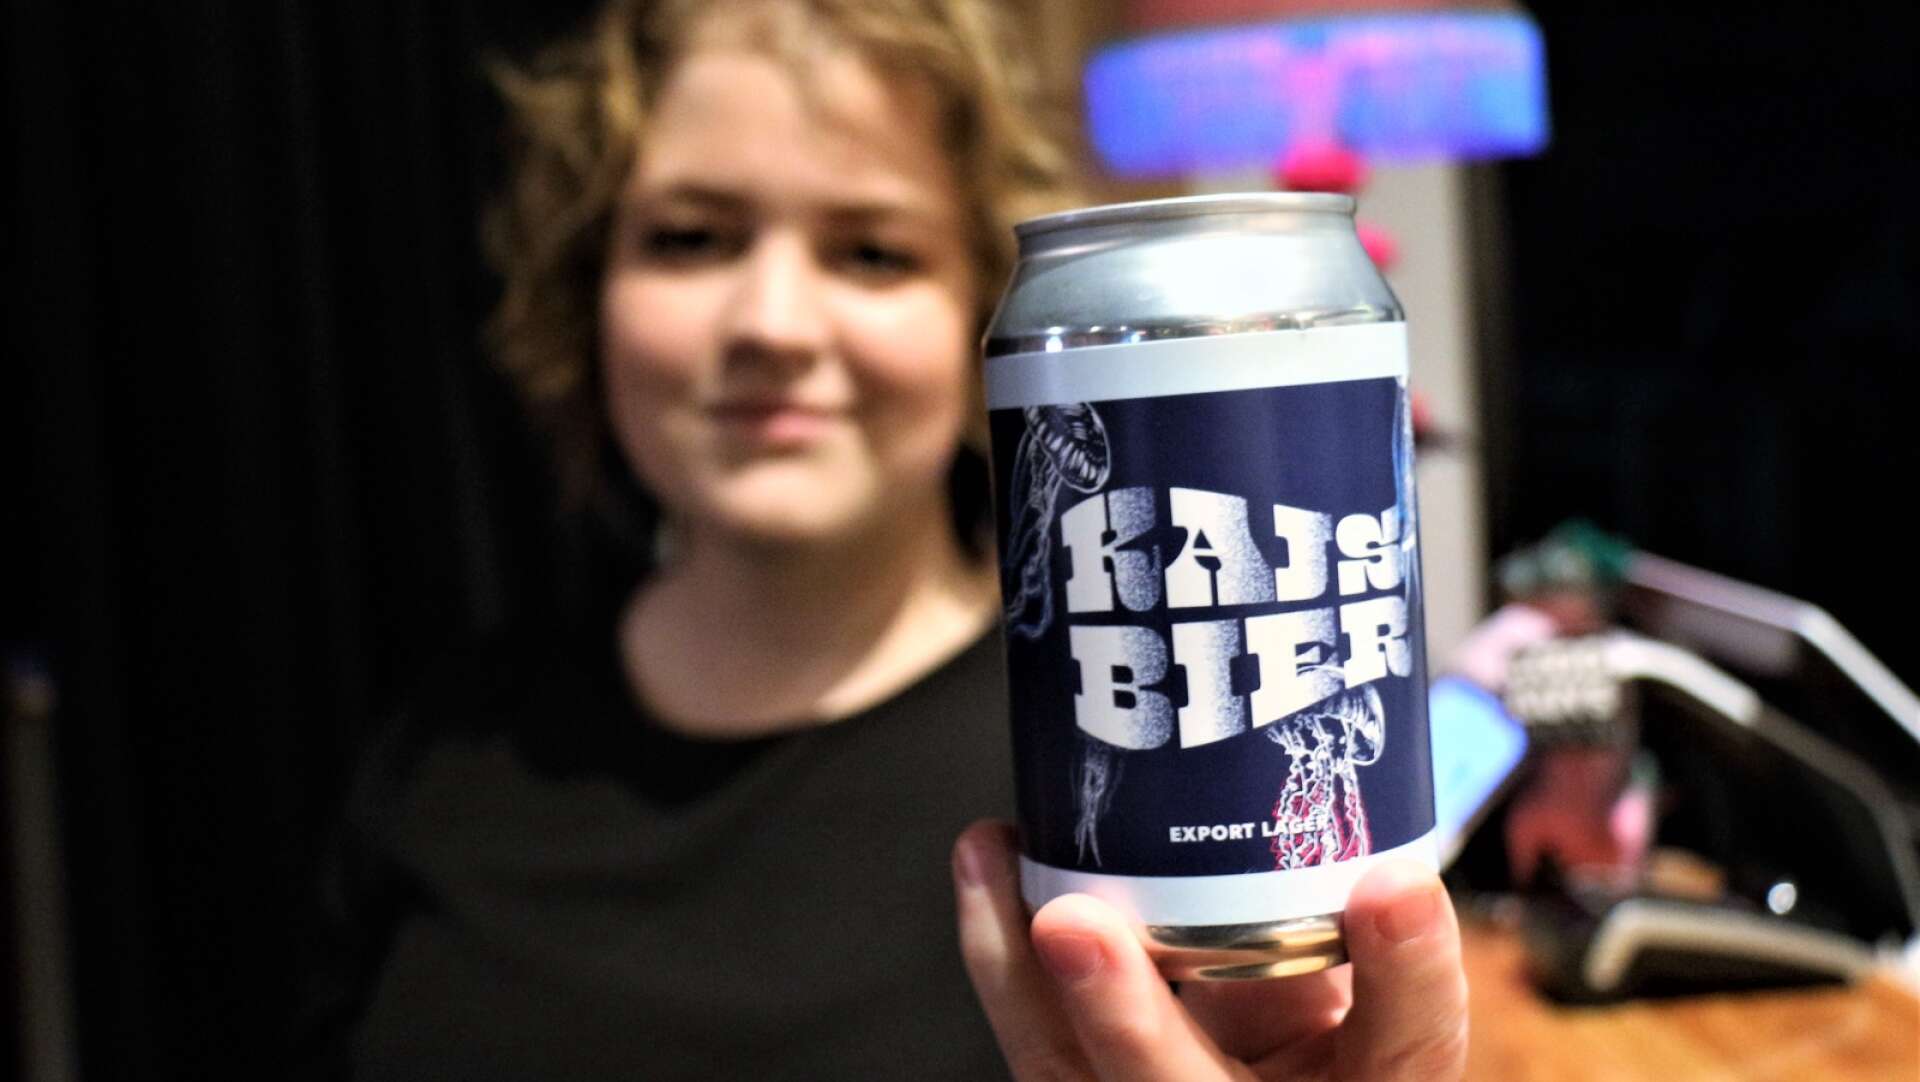 Nu finns den, tappad och klar. Den öl som Kajsa Vikström fick brygga hos Good guys brew efter sin vinst. Den blev dock ett halvår försenad.